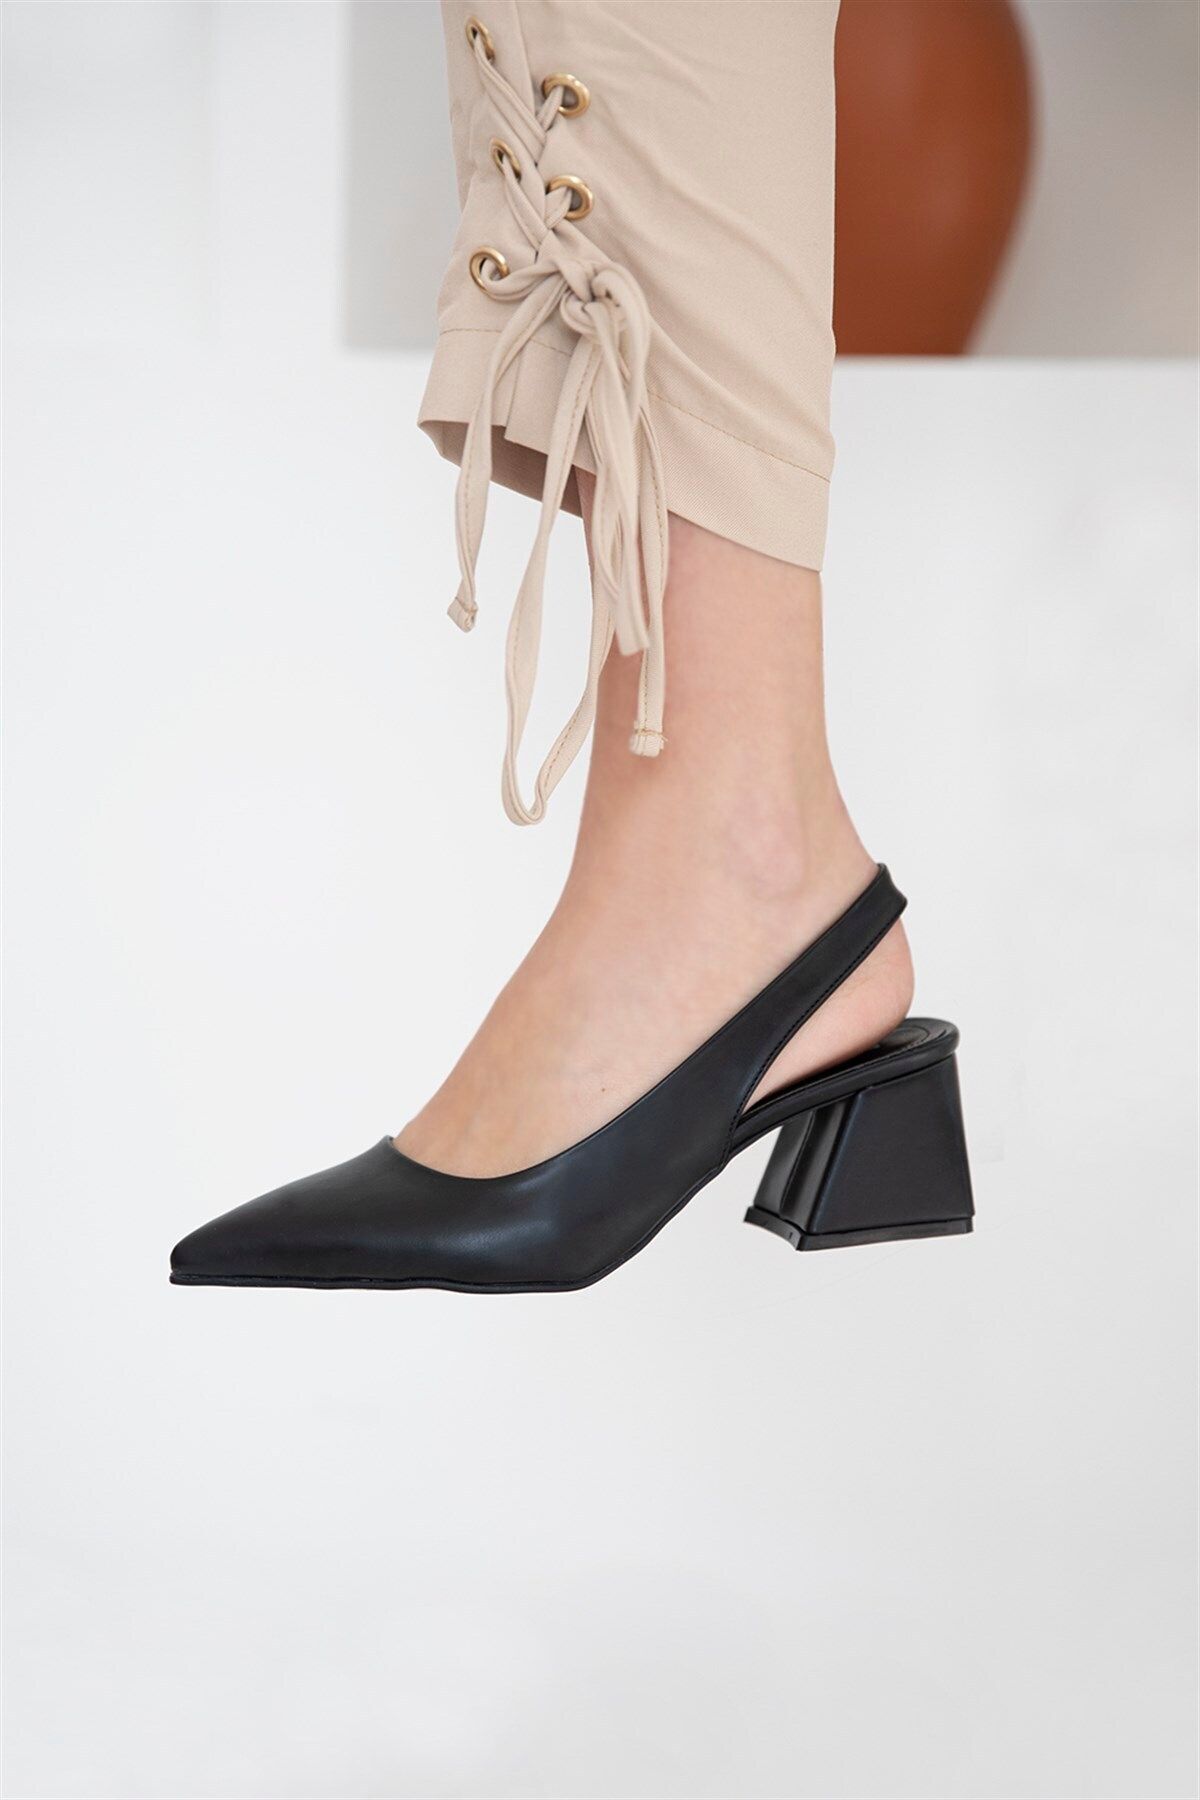 Straswans Selinda Kadın Deri Topuklu Ayakkabı Siyah